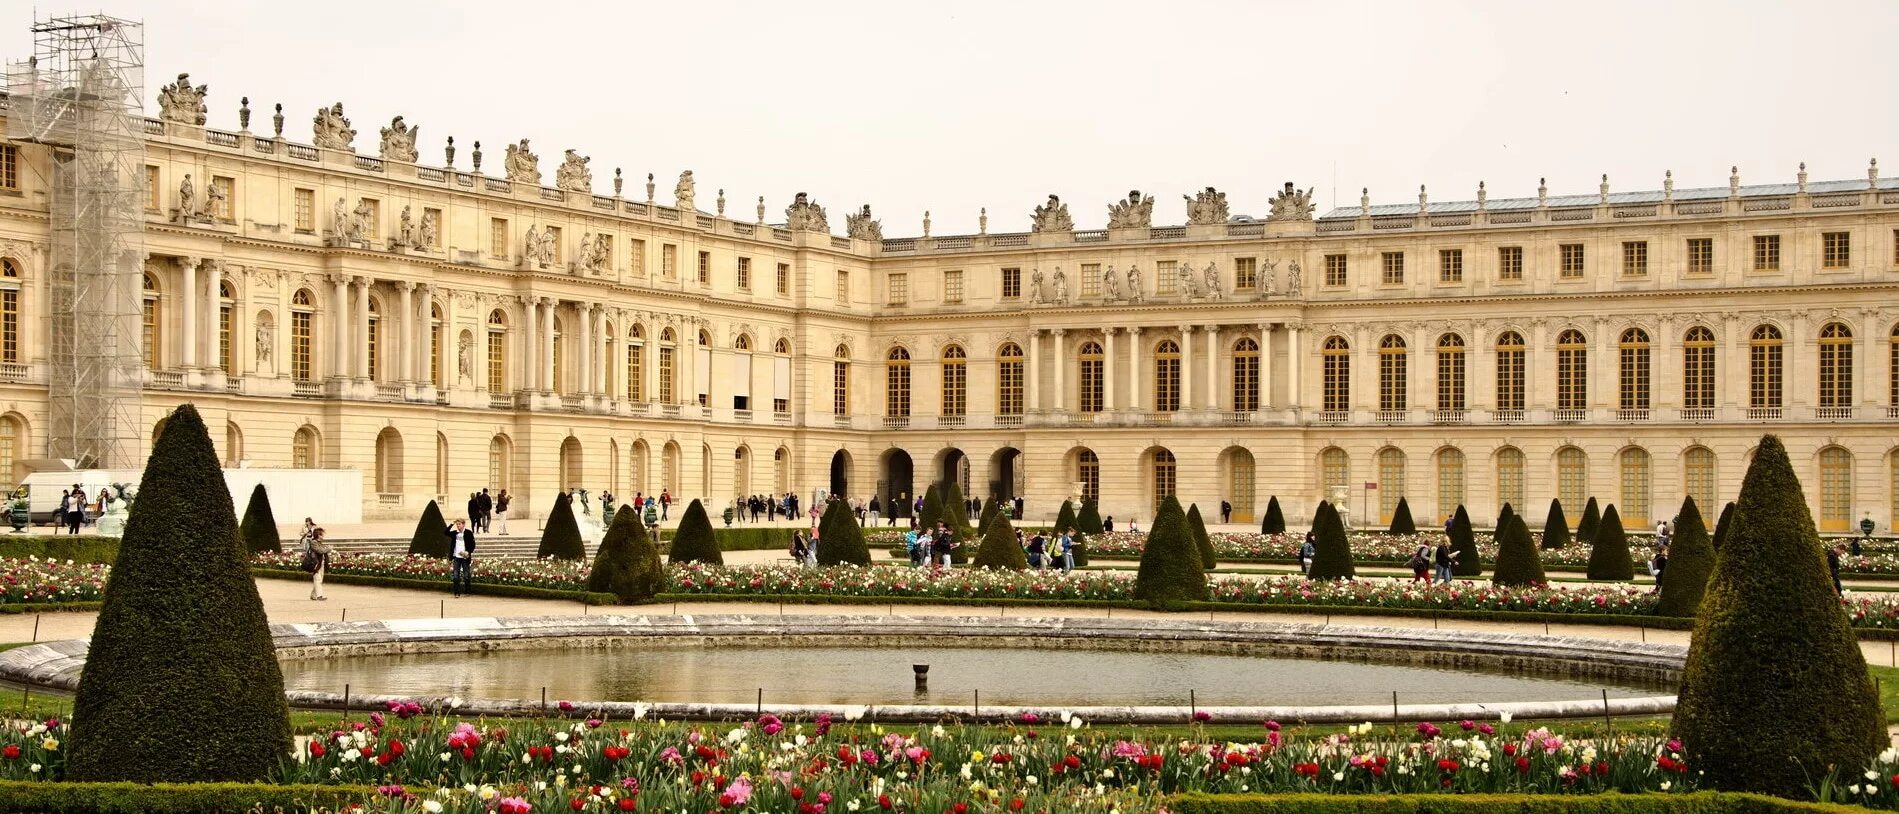 Почему версаль. Версальский дворец дворцы Версаля. Версальский дворец Версаль Барокко. Версаль дворец Франция 18 век. Версальский дворец Версаль классицизм.